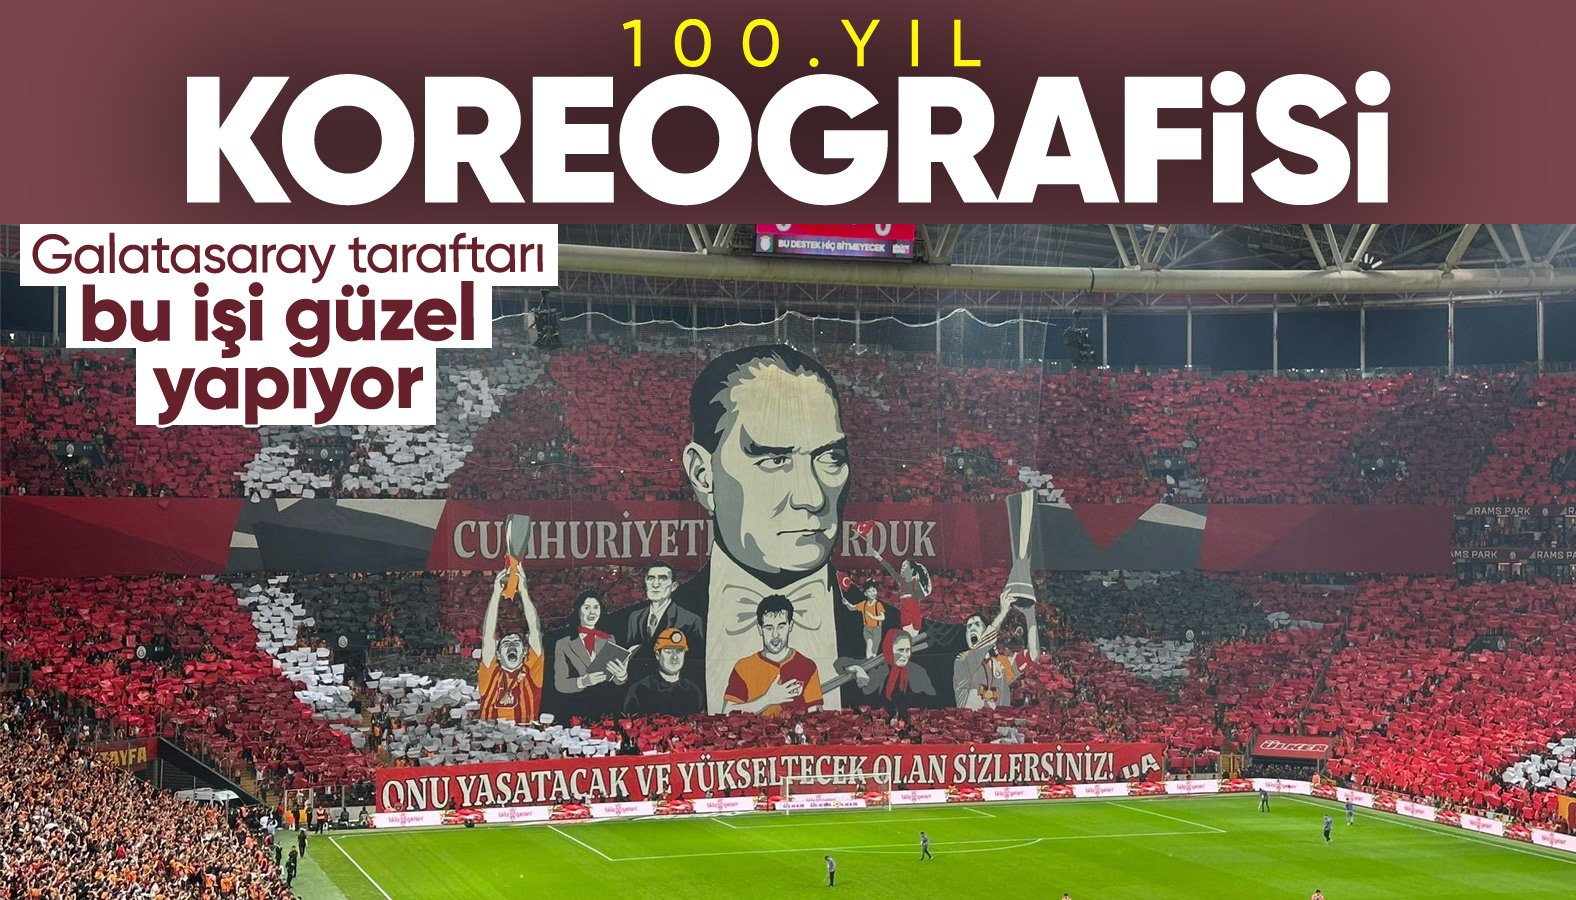 Galatasaray tribünlerinden Cumhuriyet'in 100. yılına özel koreografi!